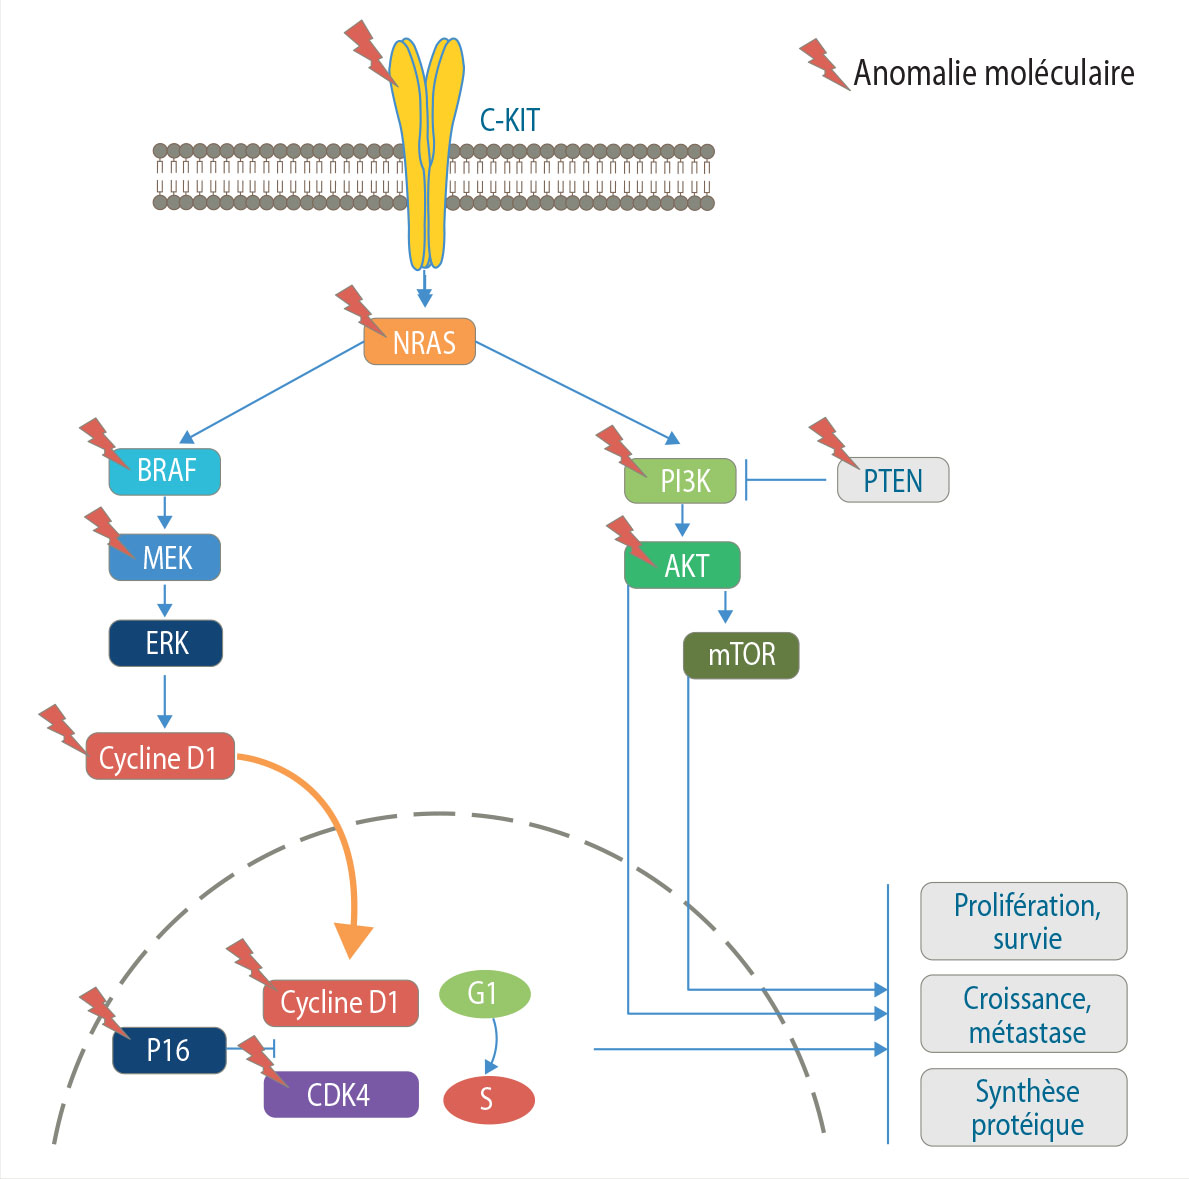 Mécanismes de résistance aux inhibiteurs de BRAF et MEK - Figure 1